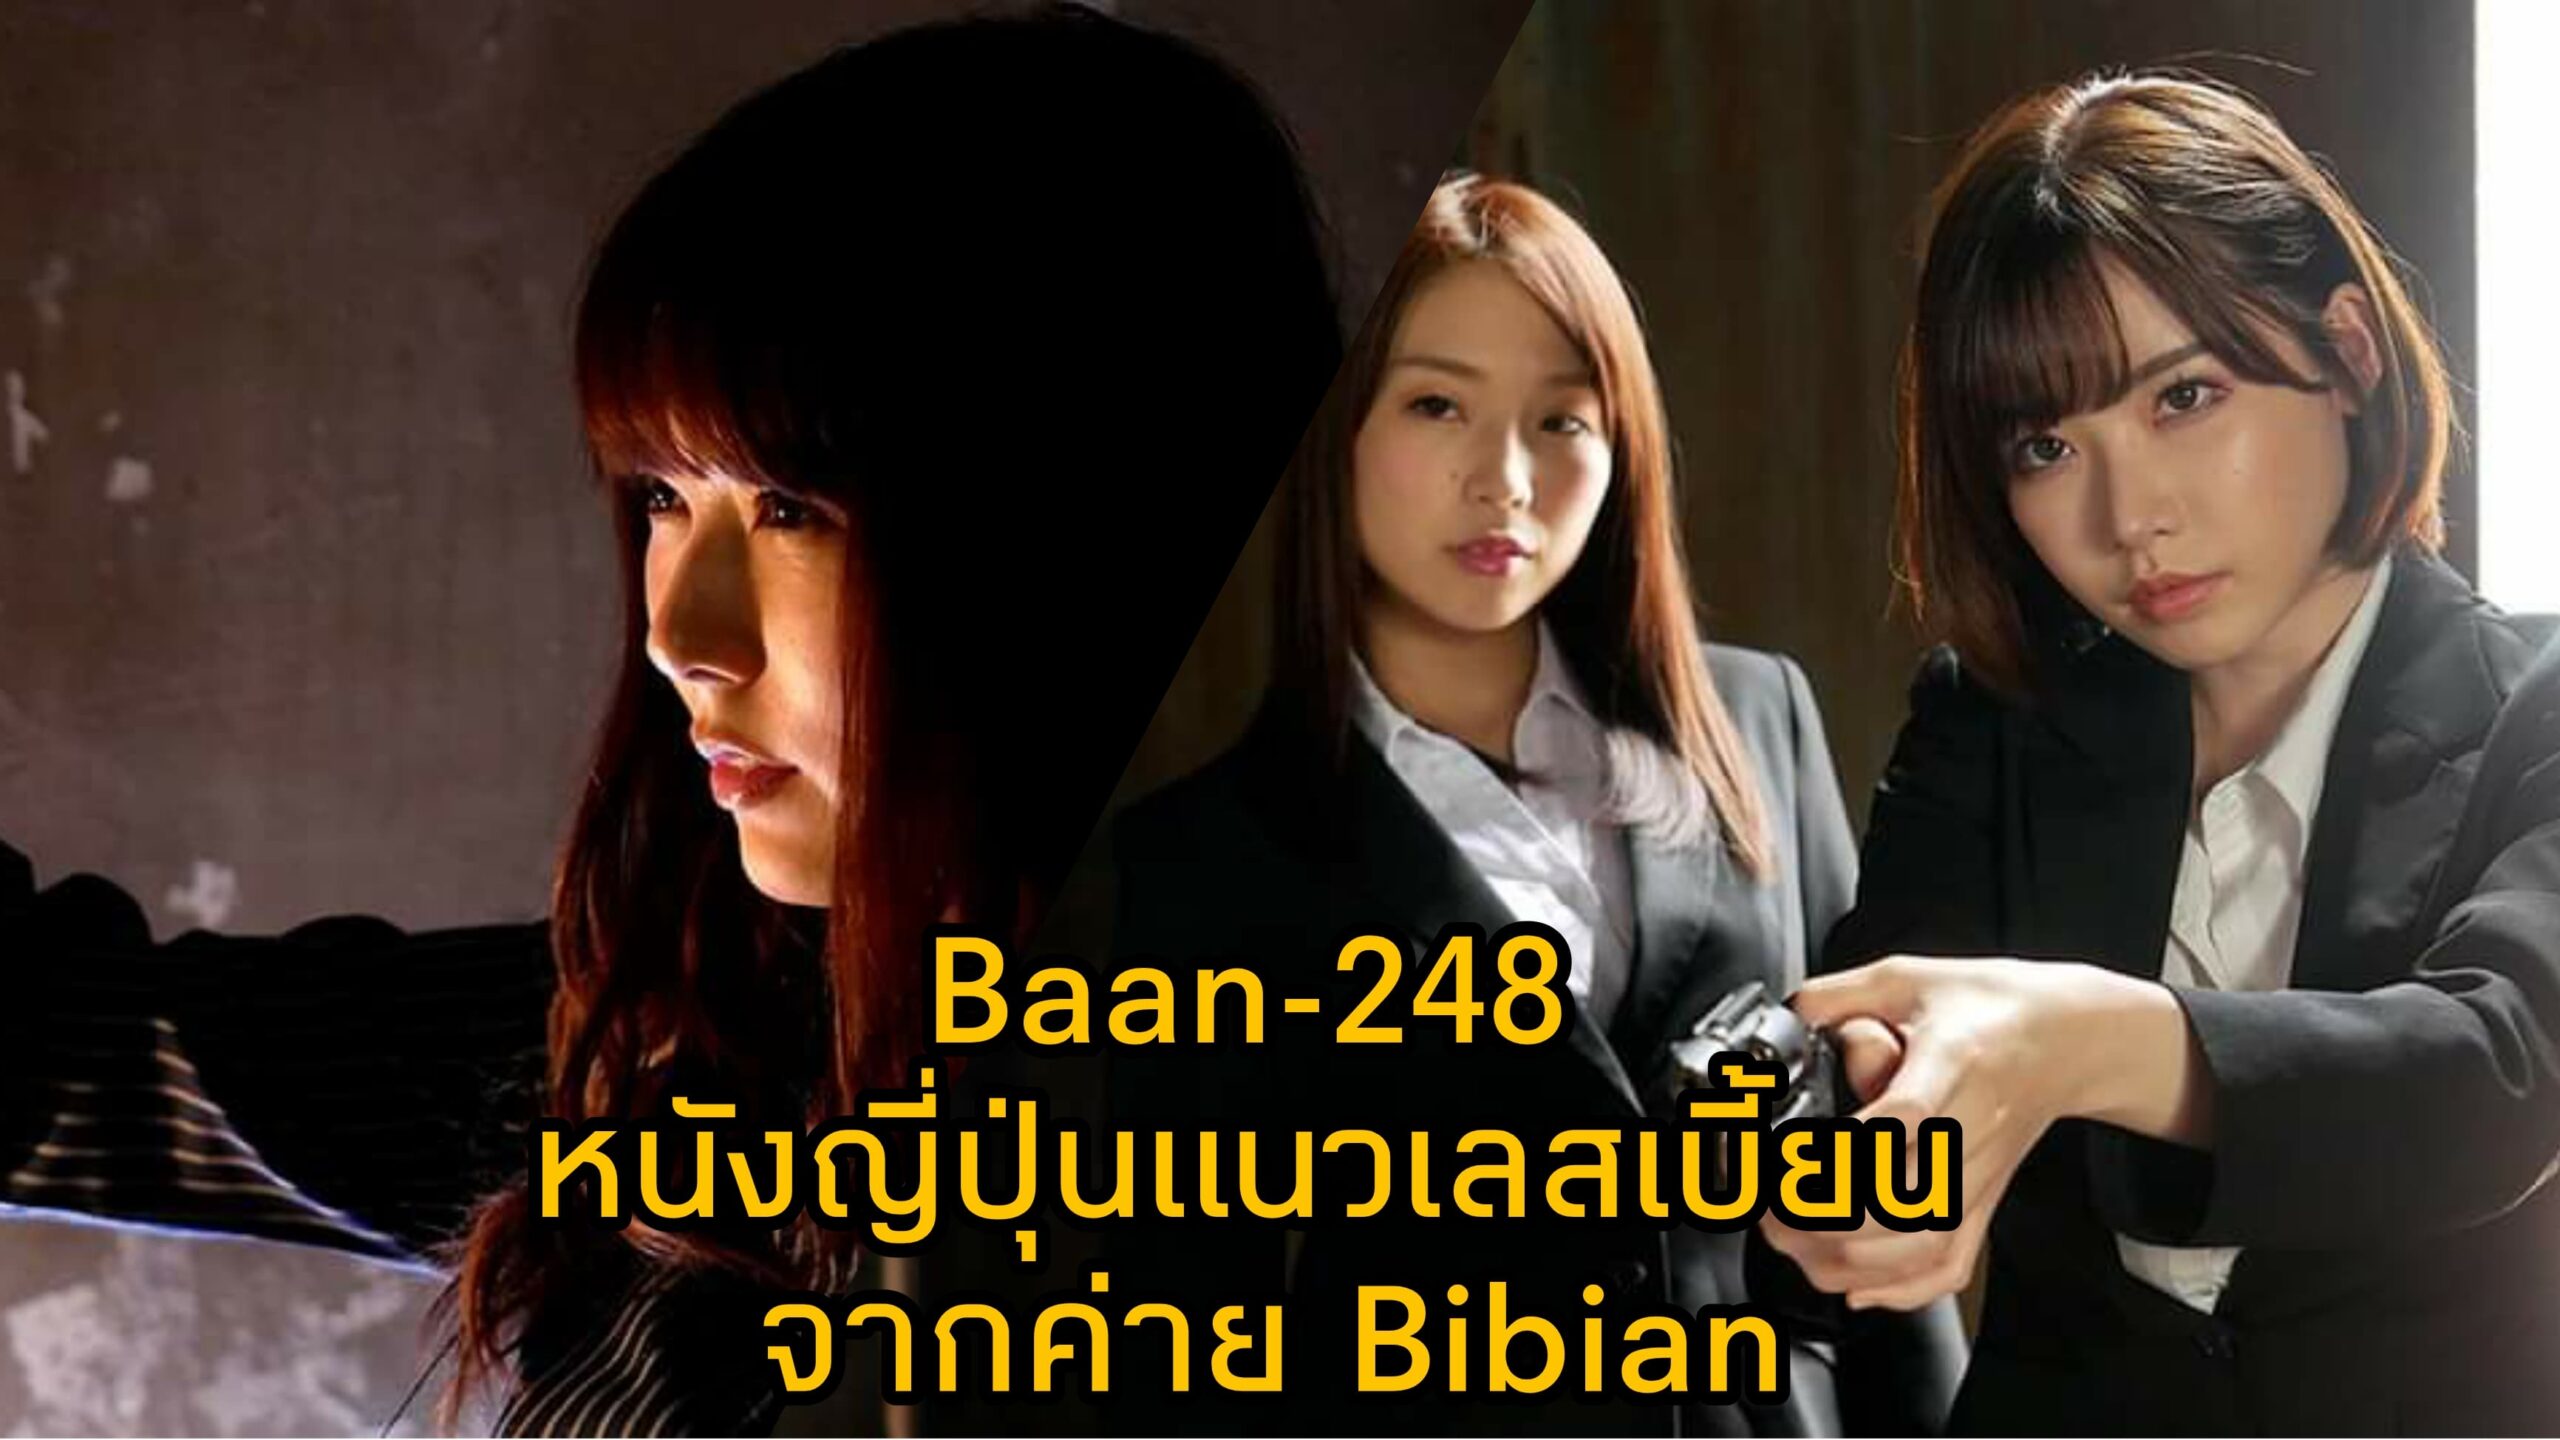 Bann-248 หนัง JAV แนวเลสเบี้ยน นำแสดงโดย 3 ตัวแม่แห่งวงการเอวี Eimi Fukada 6